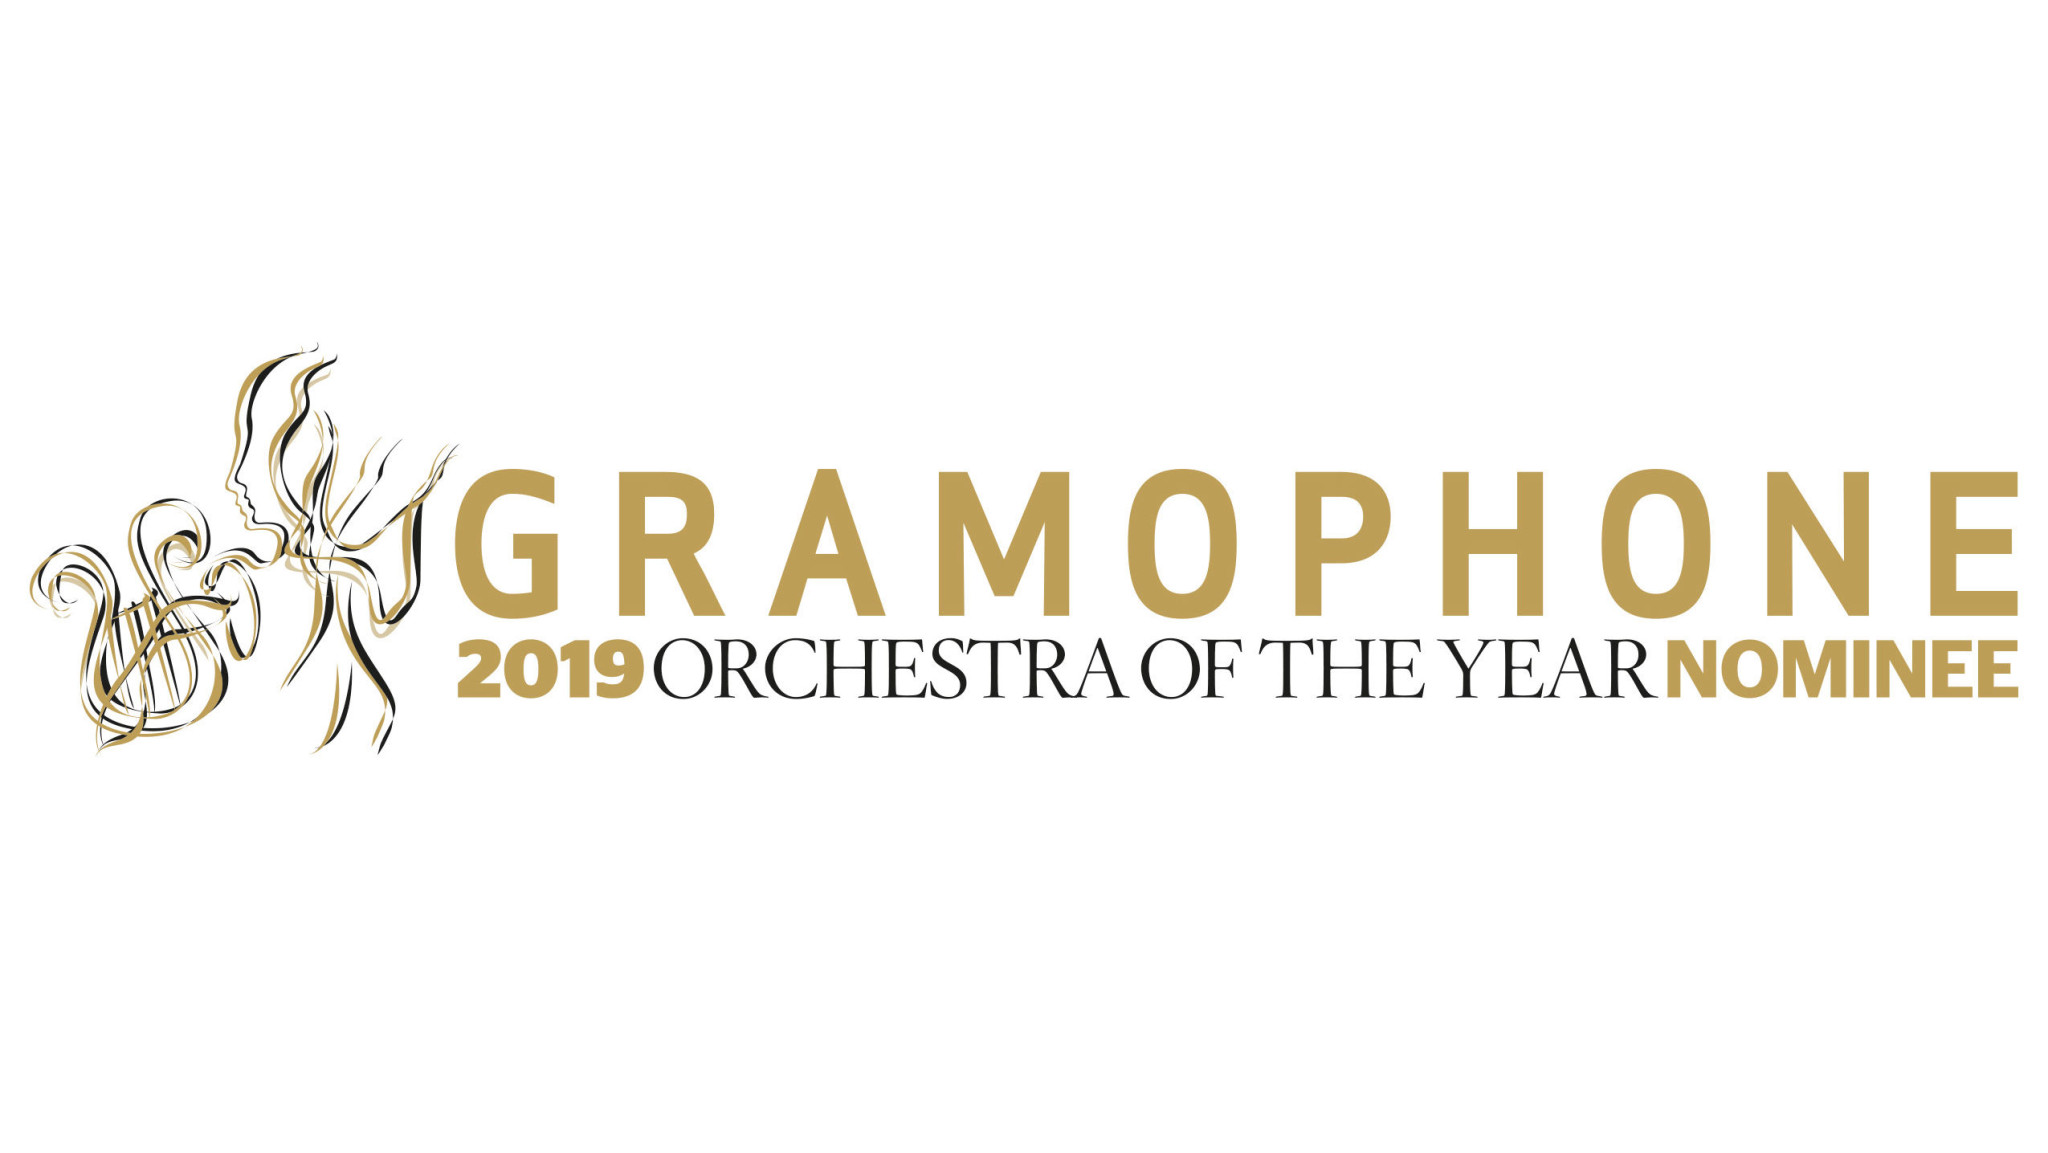 Orchester des Jahres - Boston Symphony Orchestra und Staatskapelle Berlin für Gramophone Classical Music Award nominiert